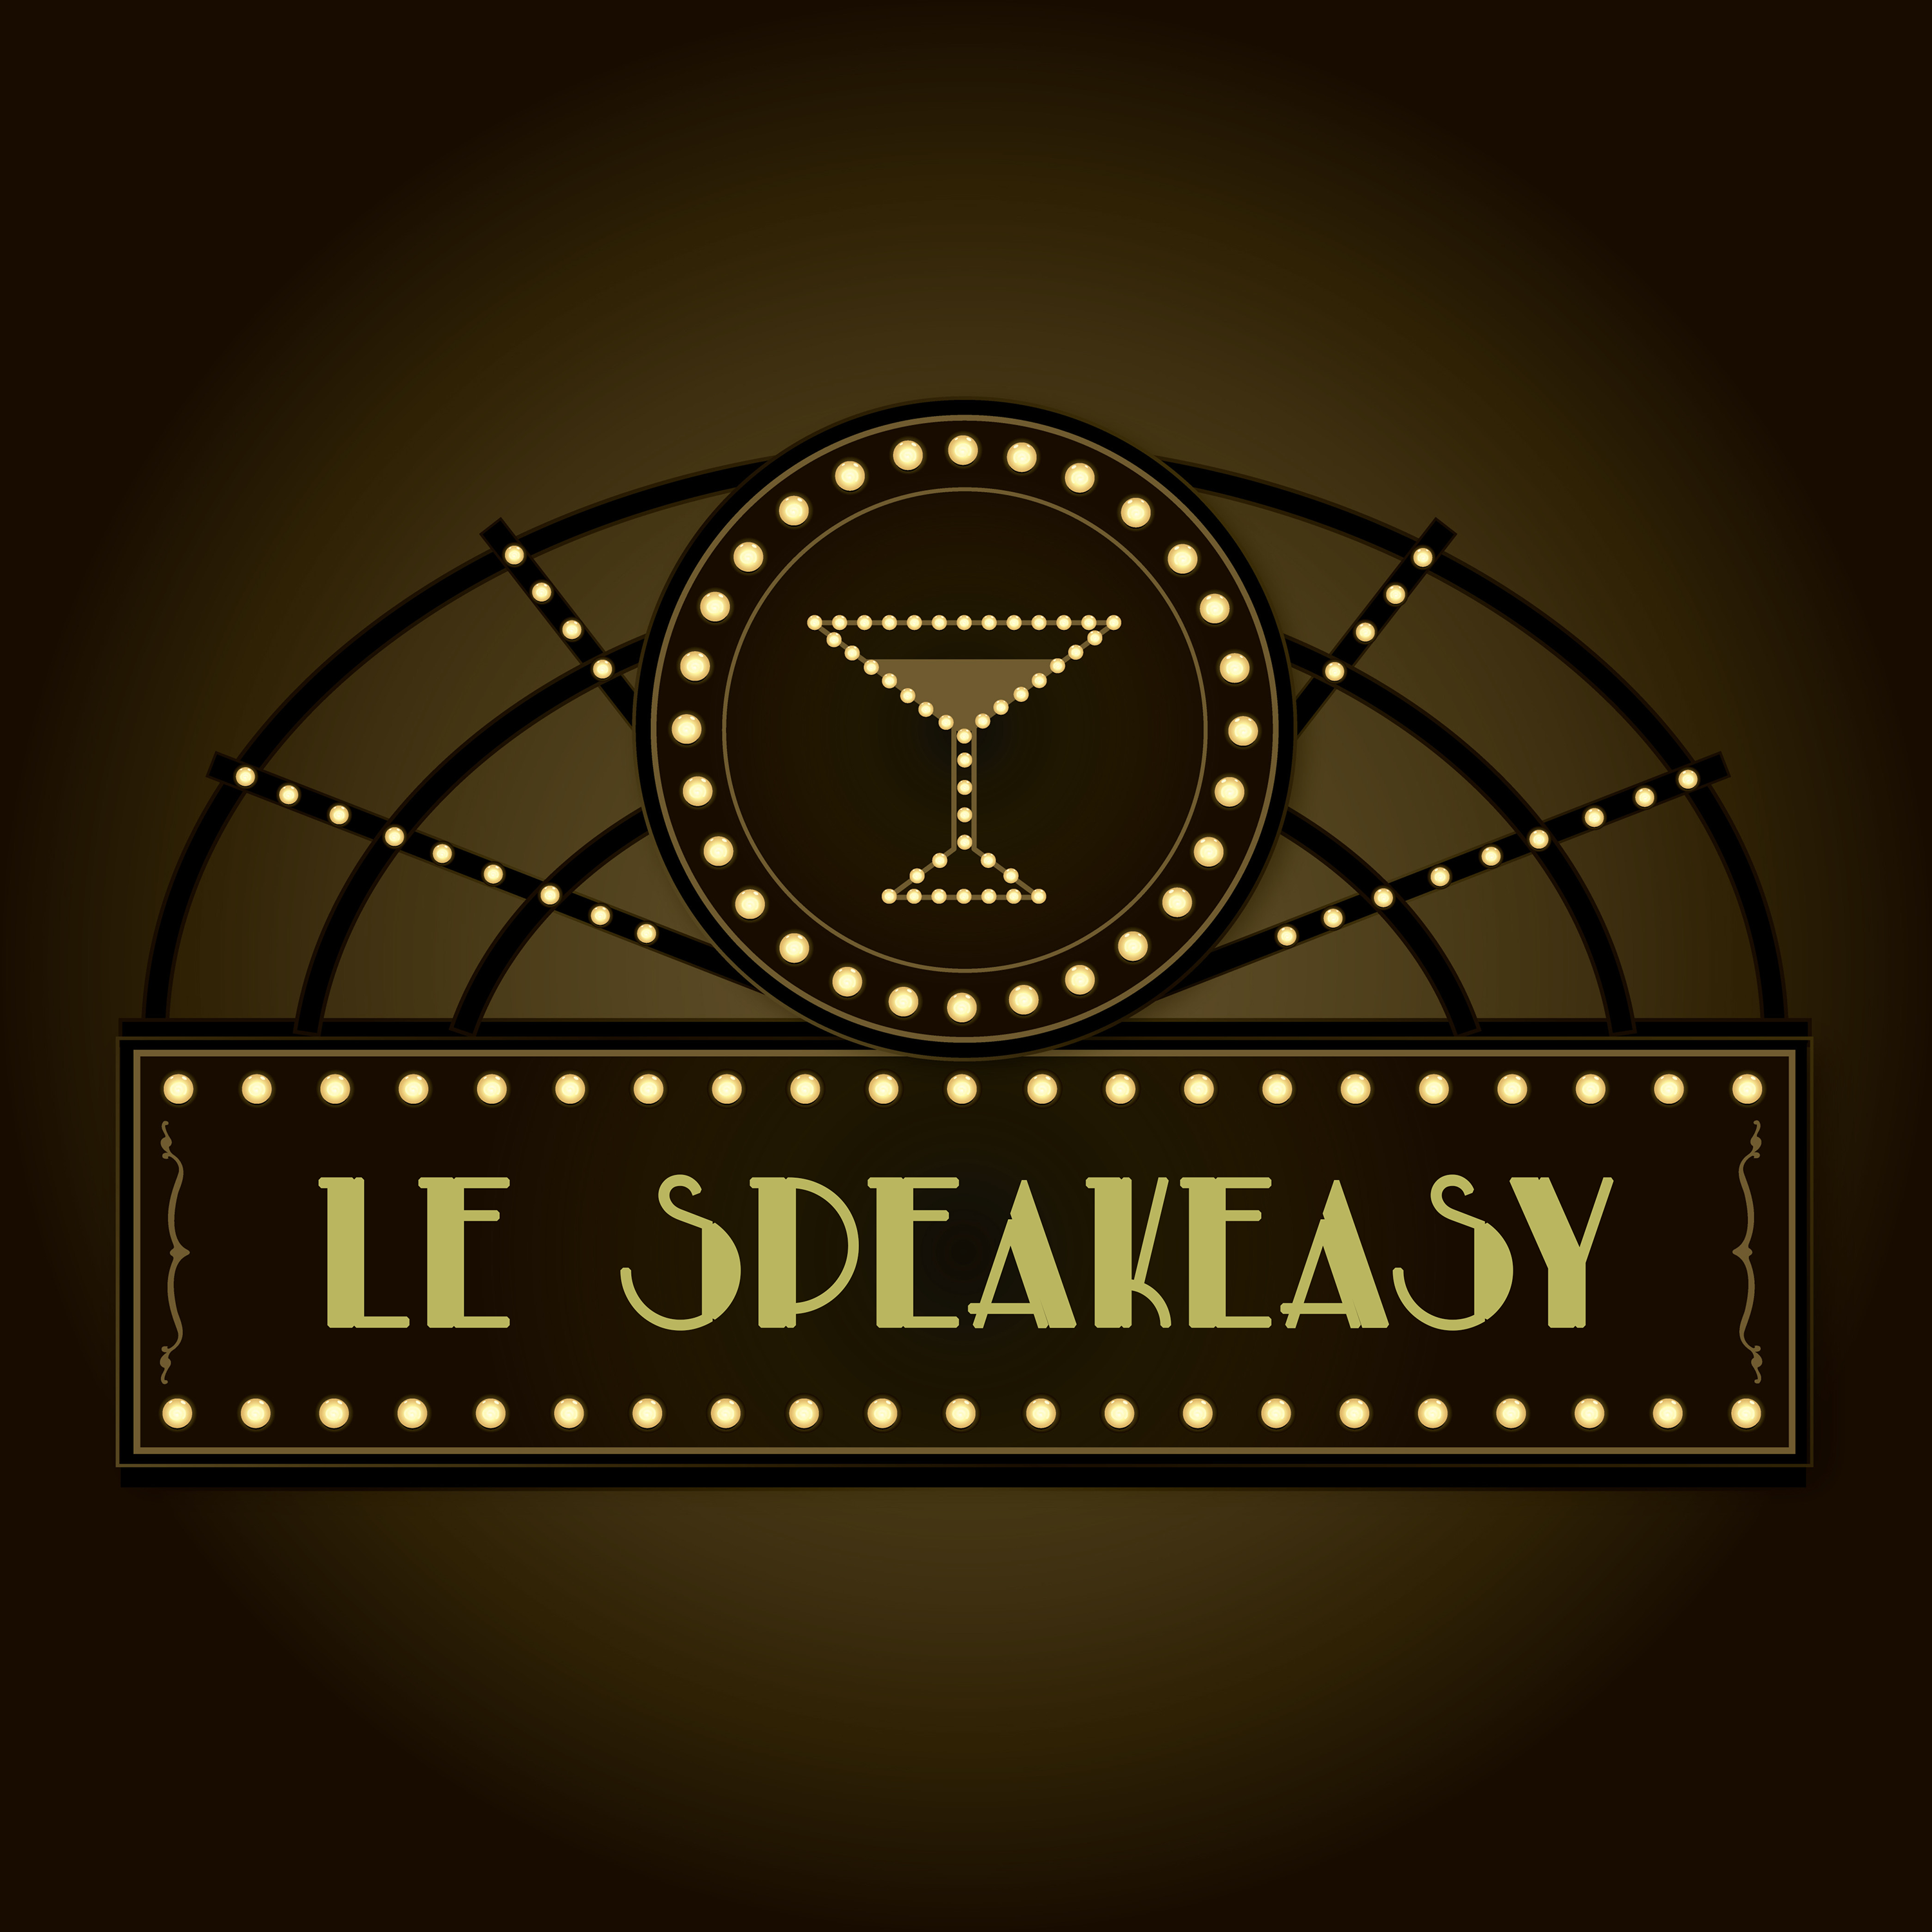 Le Speakeasy